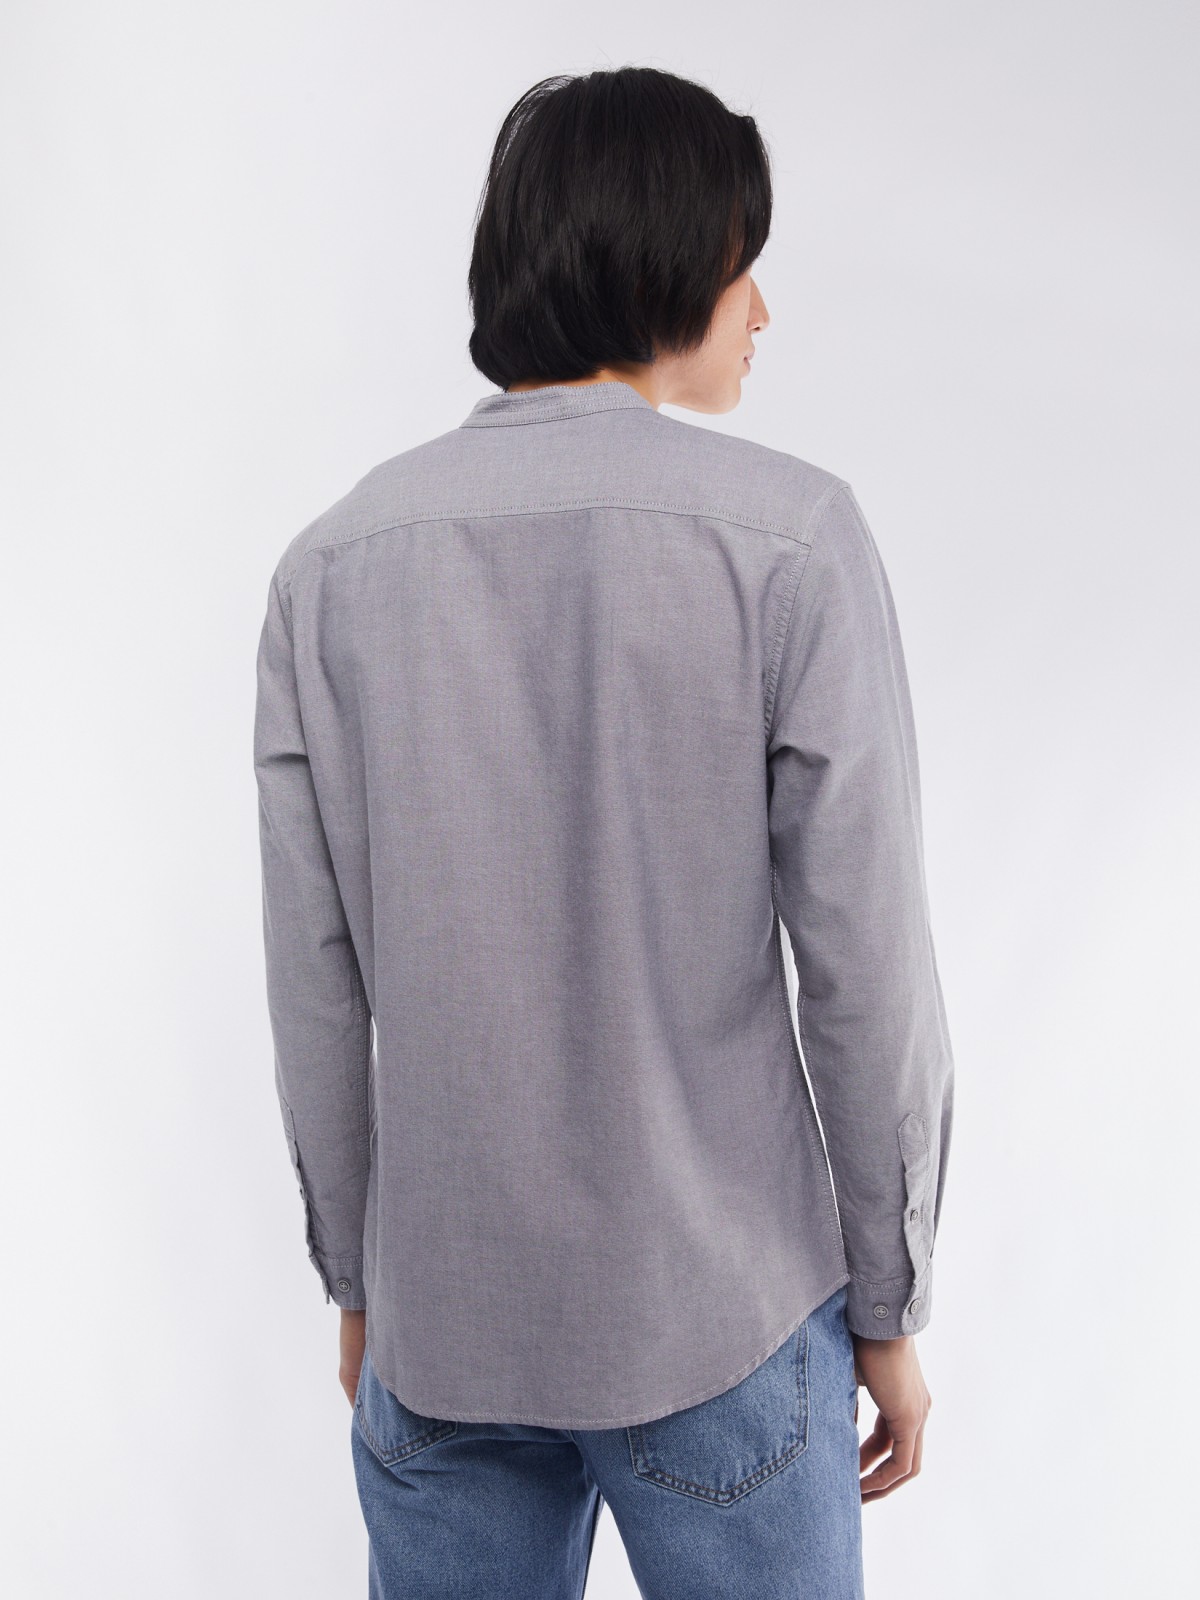 Офисная рубашка из хлопка с воротником-стойкой и длинным рукавом zolla 014122159033, цвет серый, размер M - фото 6